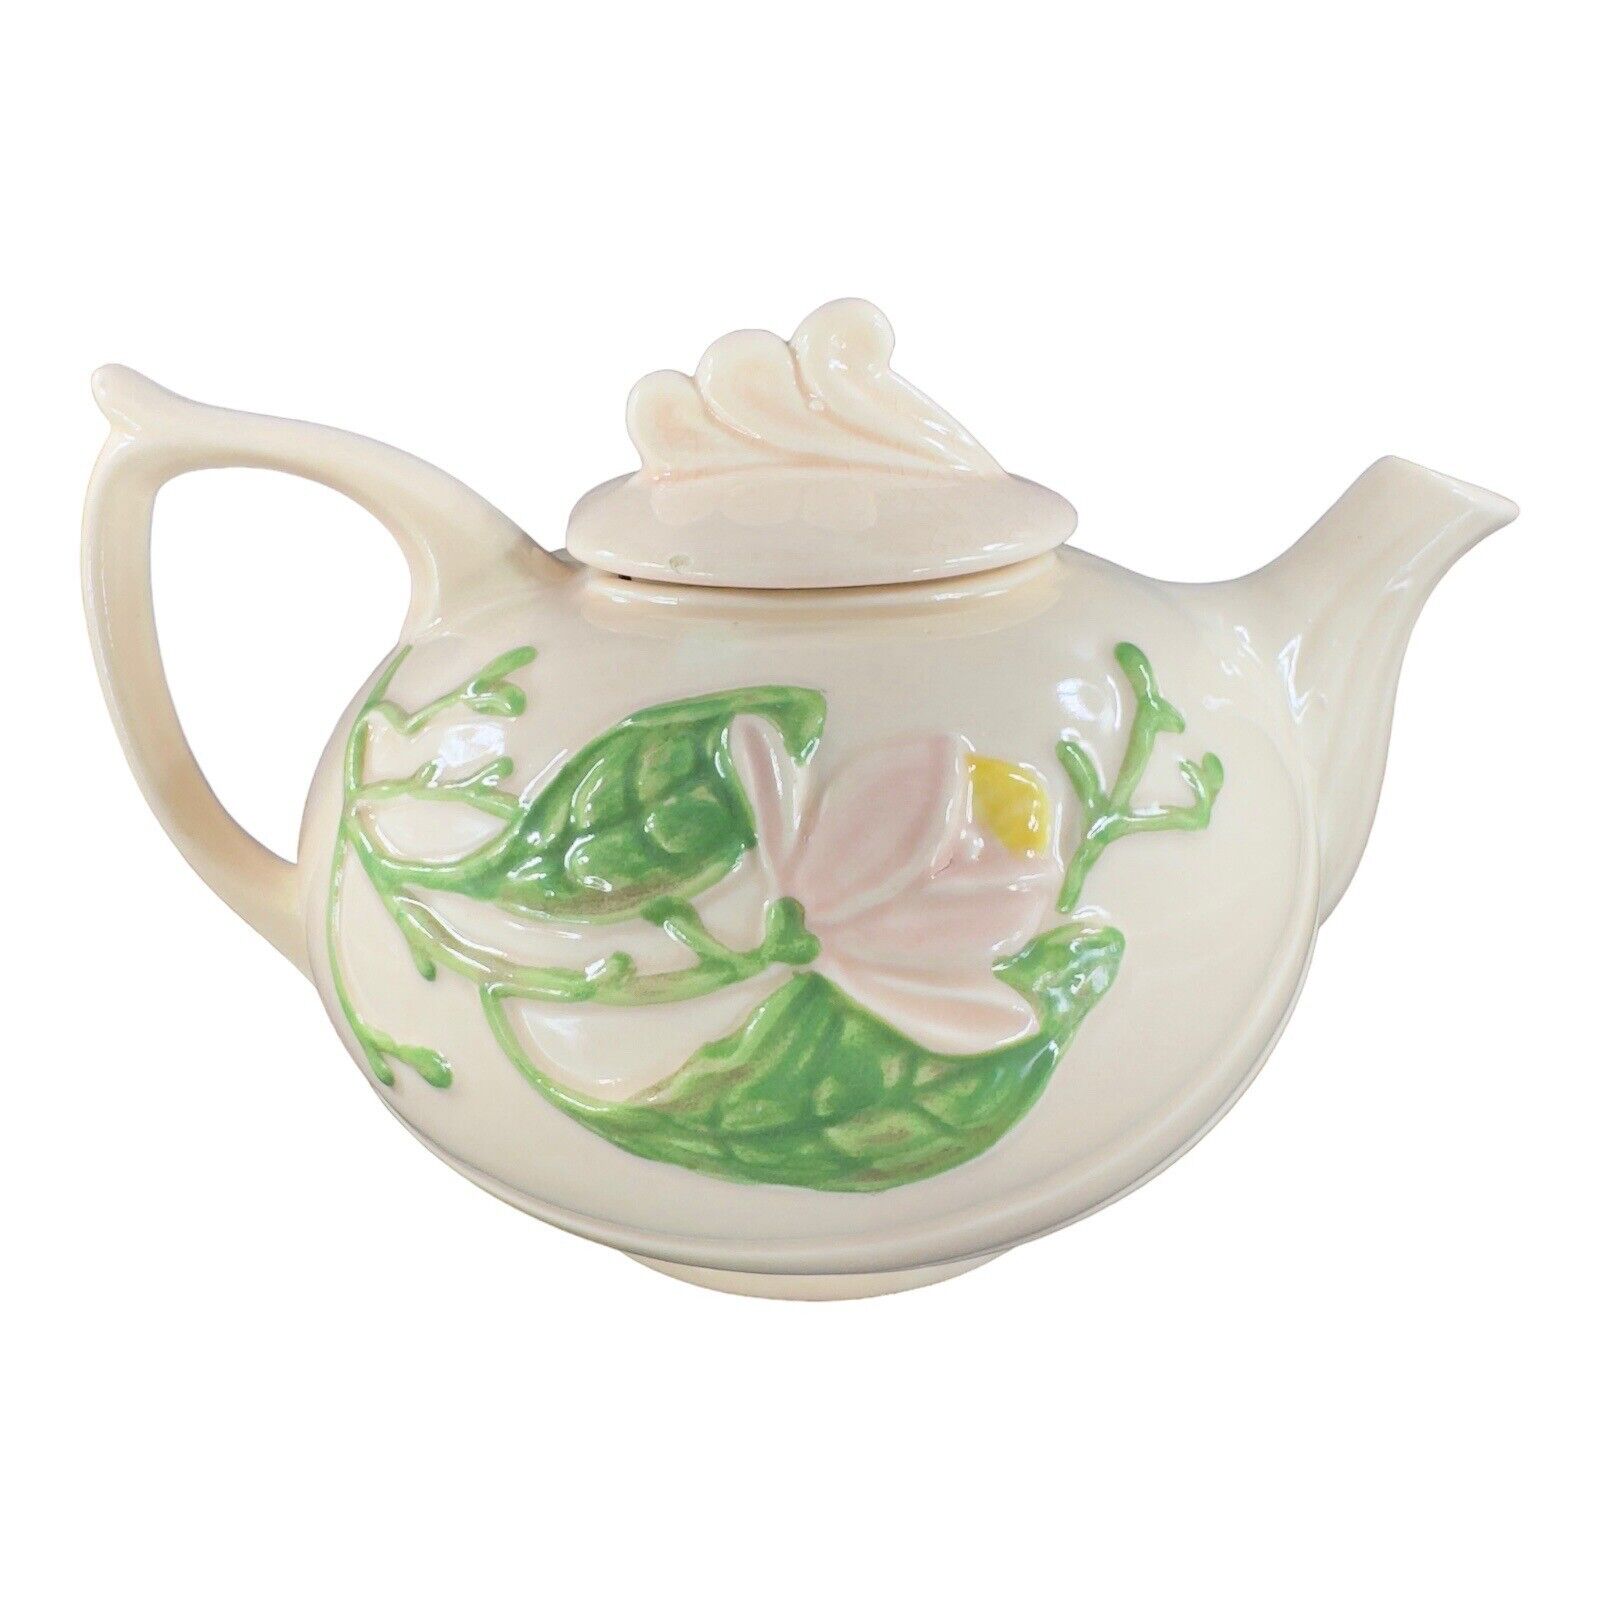 1940s Hull Art Pottery Magnolia Pink Flower Teapot H20 Ceramic Porcelain VTG